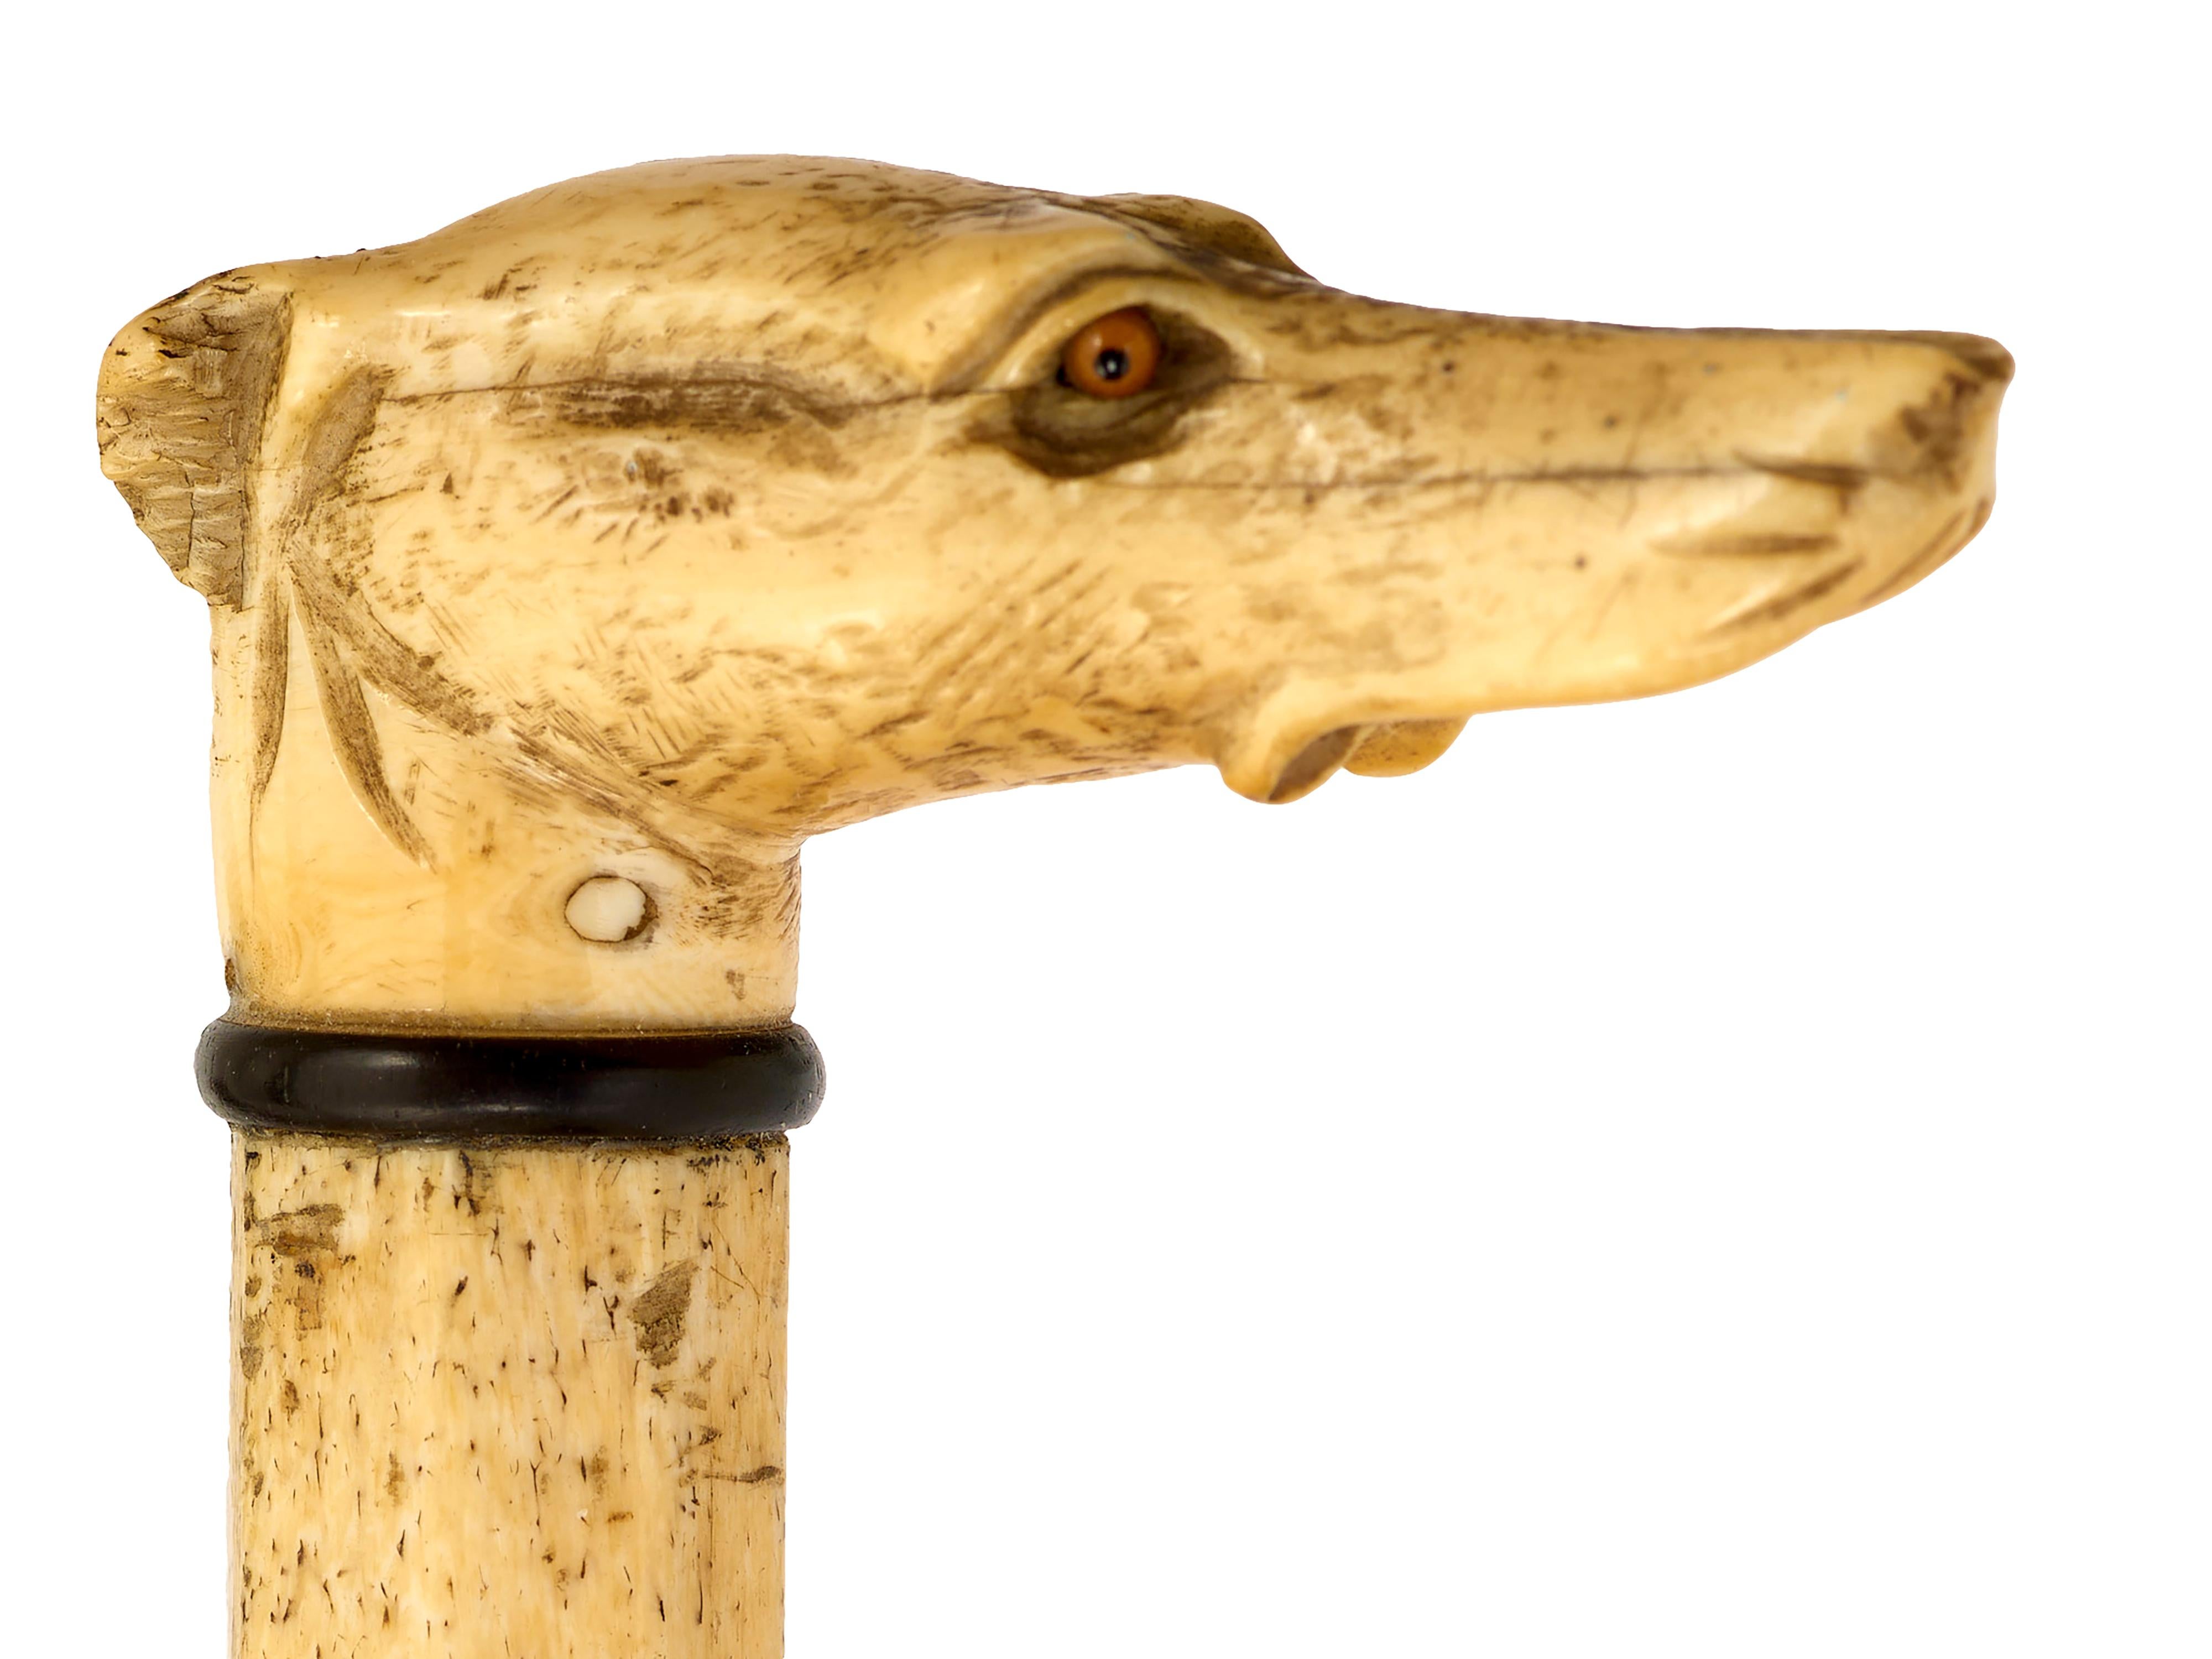 Whalebone walking cane with greyhound top.
Glass eyes, carved greyhound head. All original. L91, d 7, w 2.5cm. Circa 1870. English
